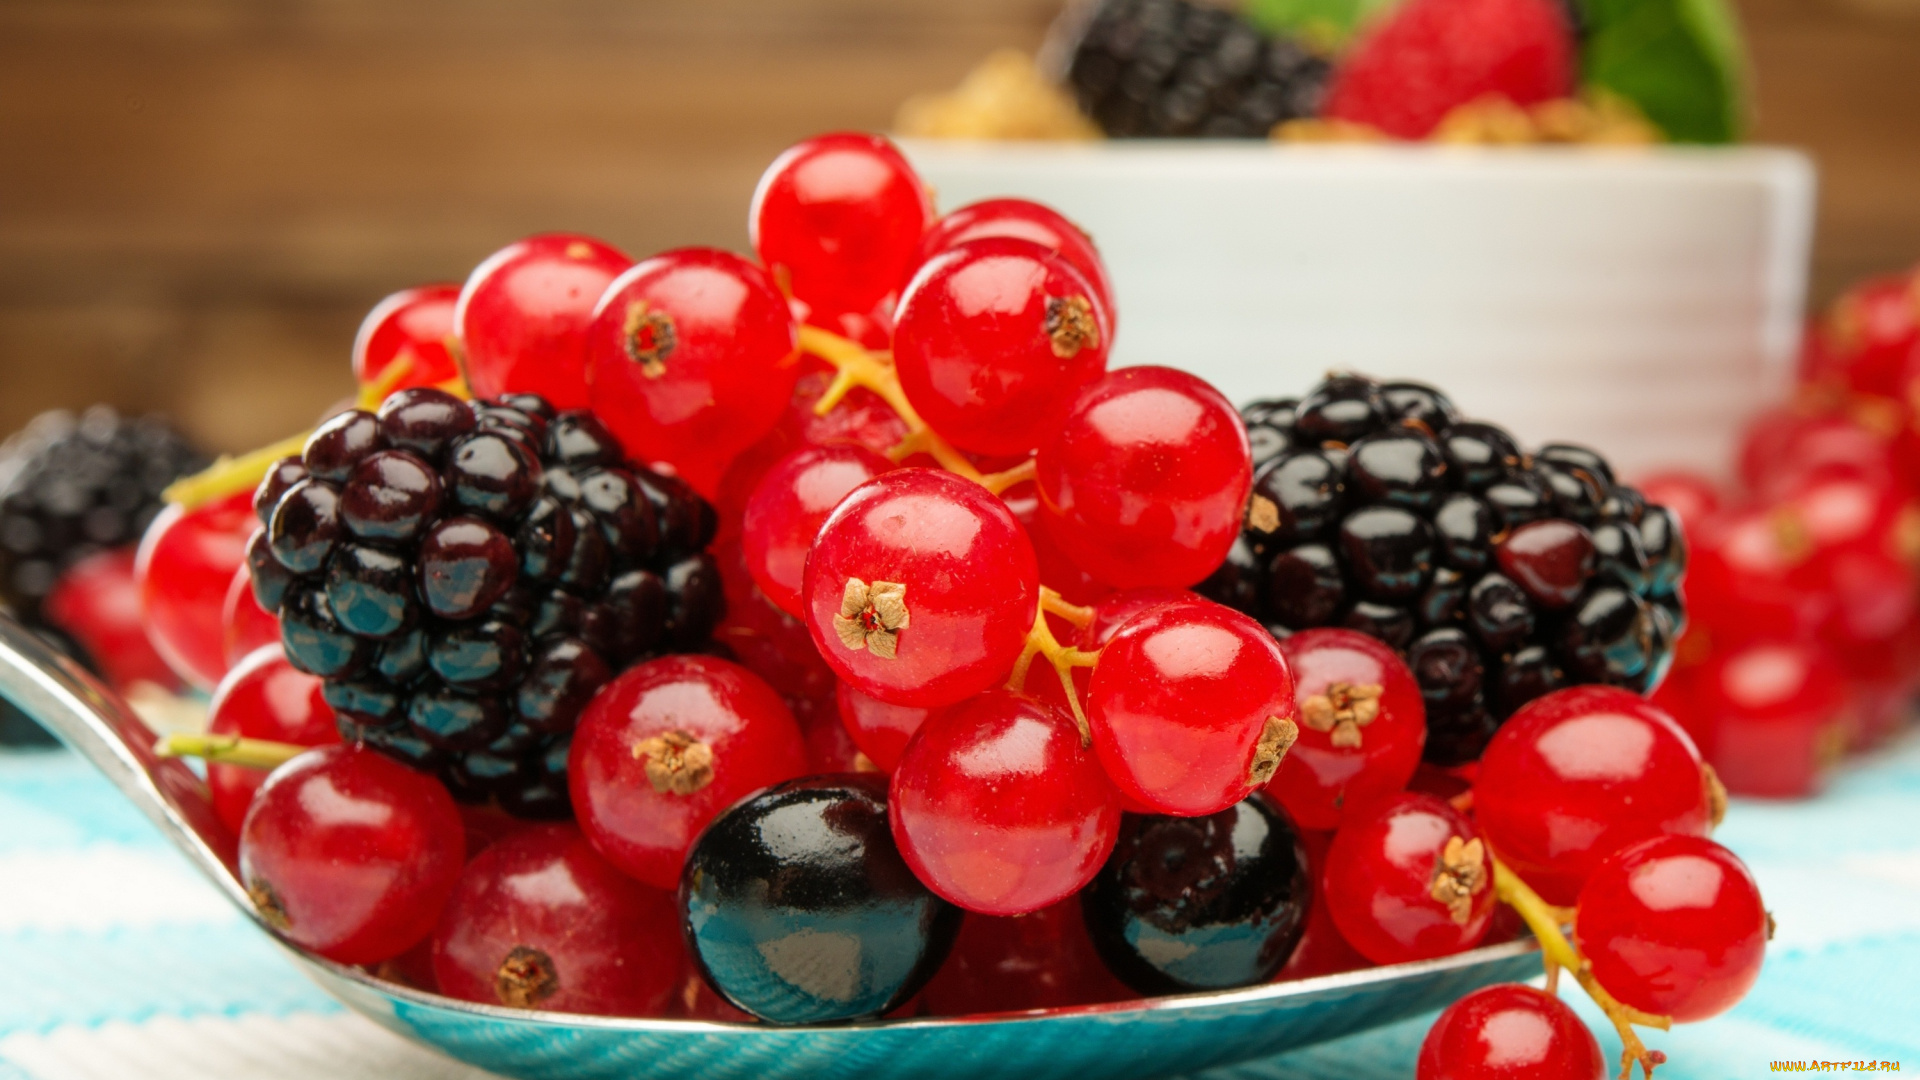 еда, фрукты, , ягоды, ягоды, fresh, berries, ежевика, смородина